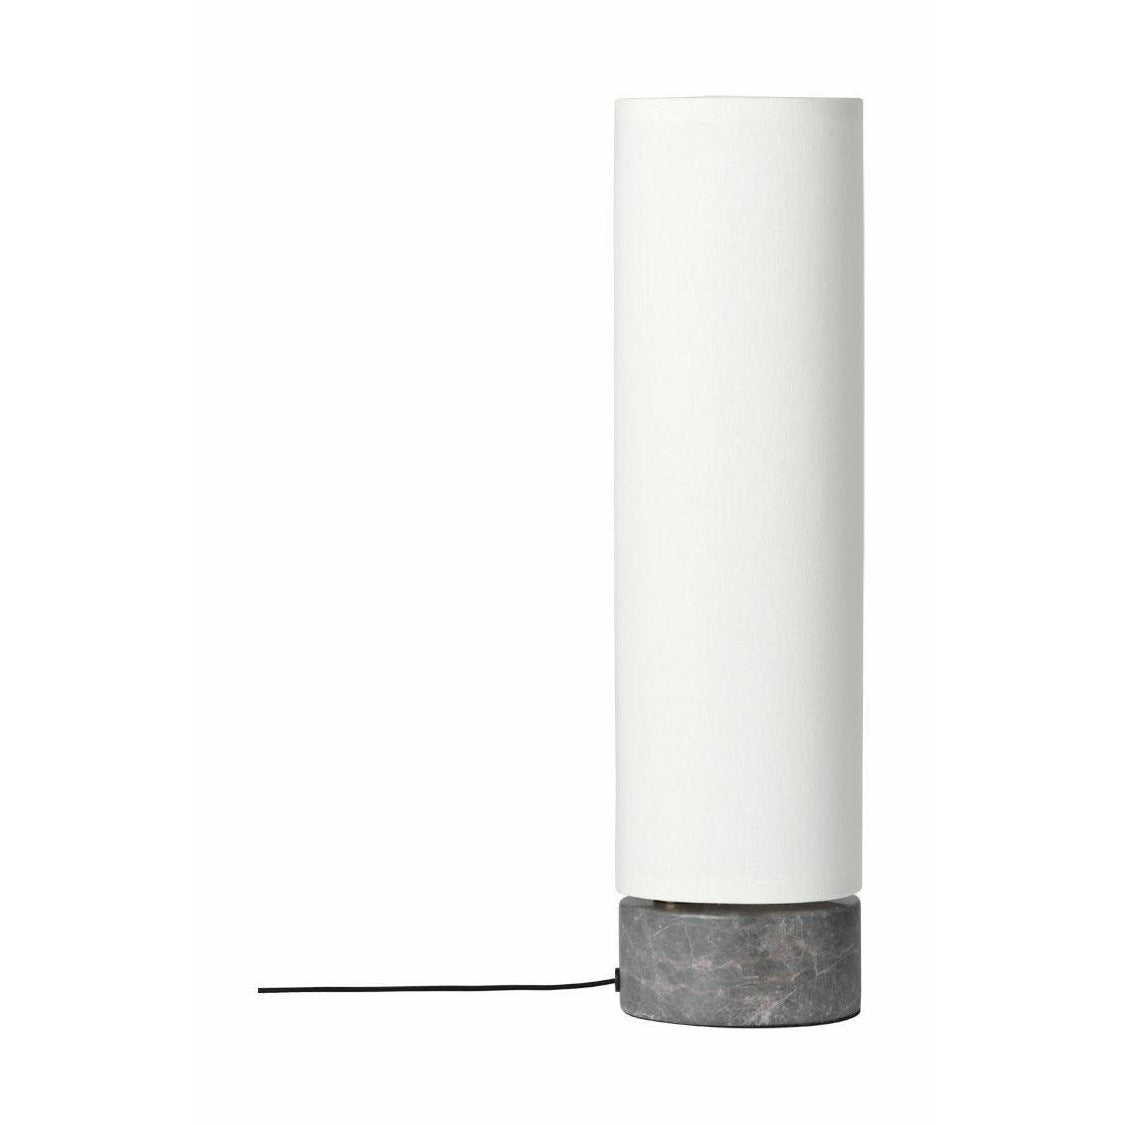 Gubi Unbound Table Lamp øx H 12x45, White